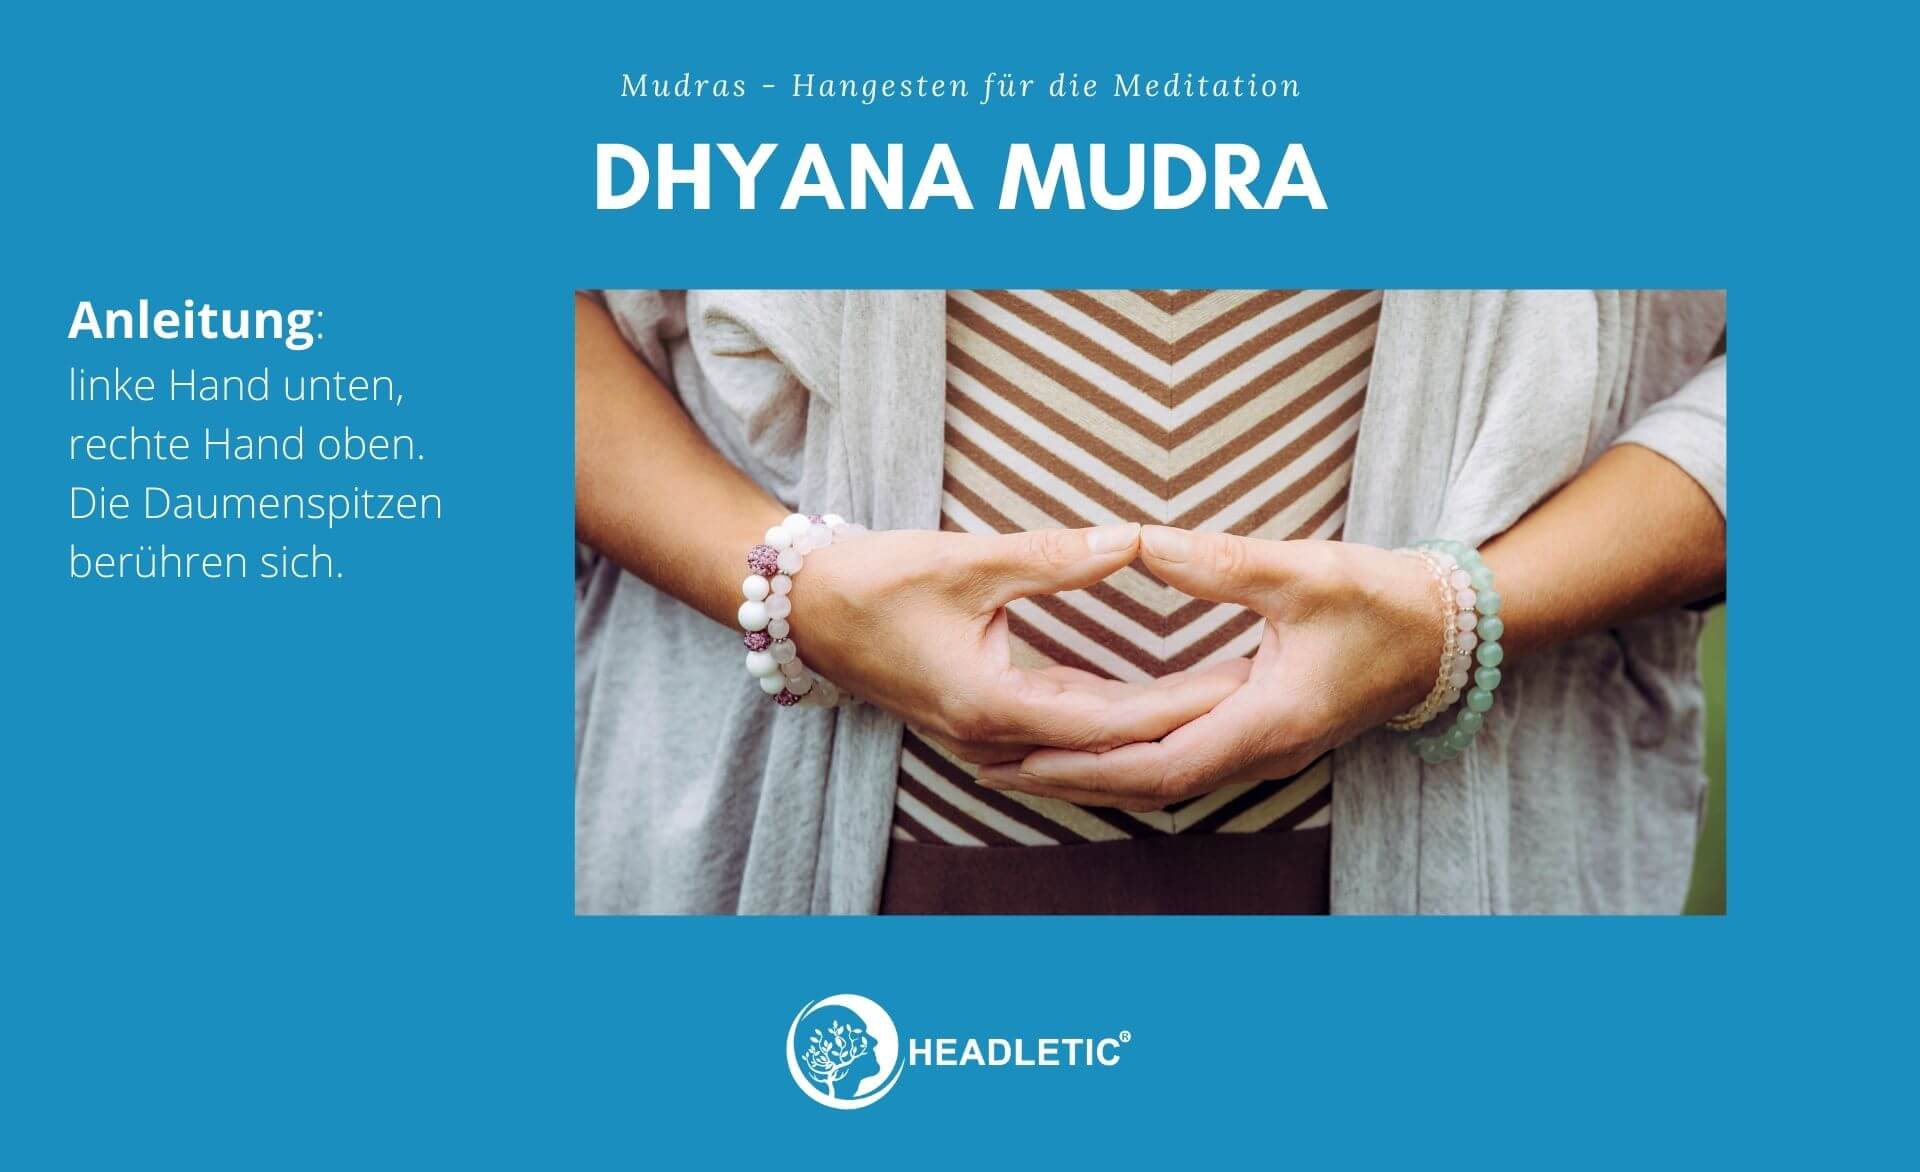 Dhyana Mudra - Handgesten für die Meditation